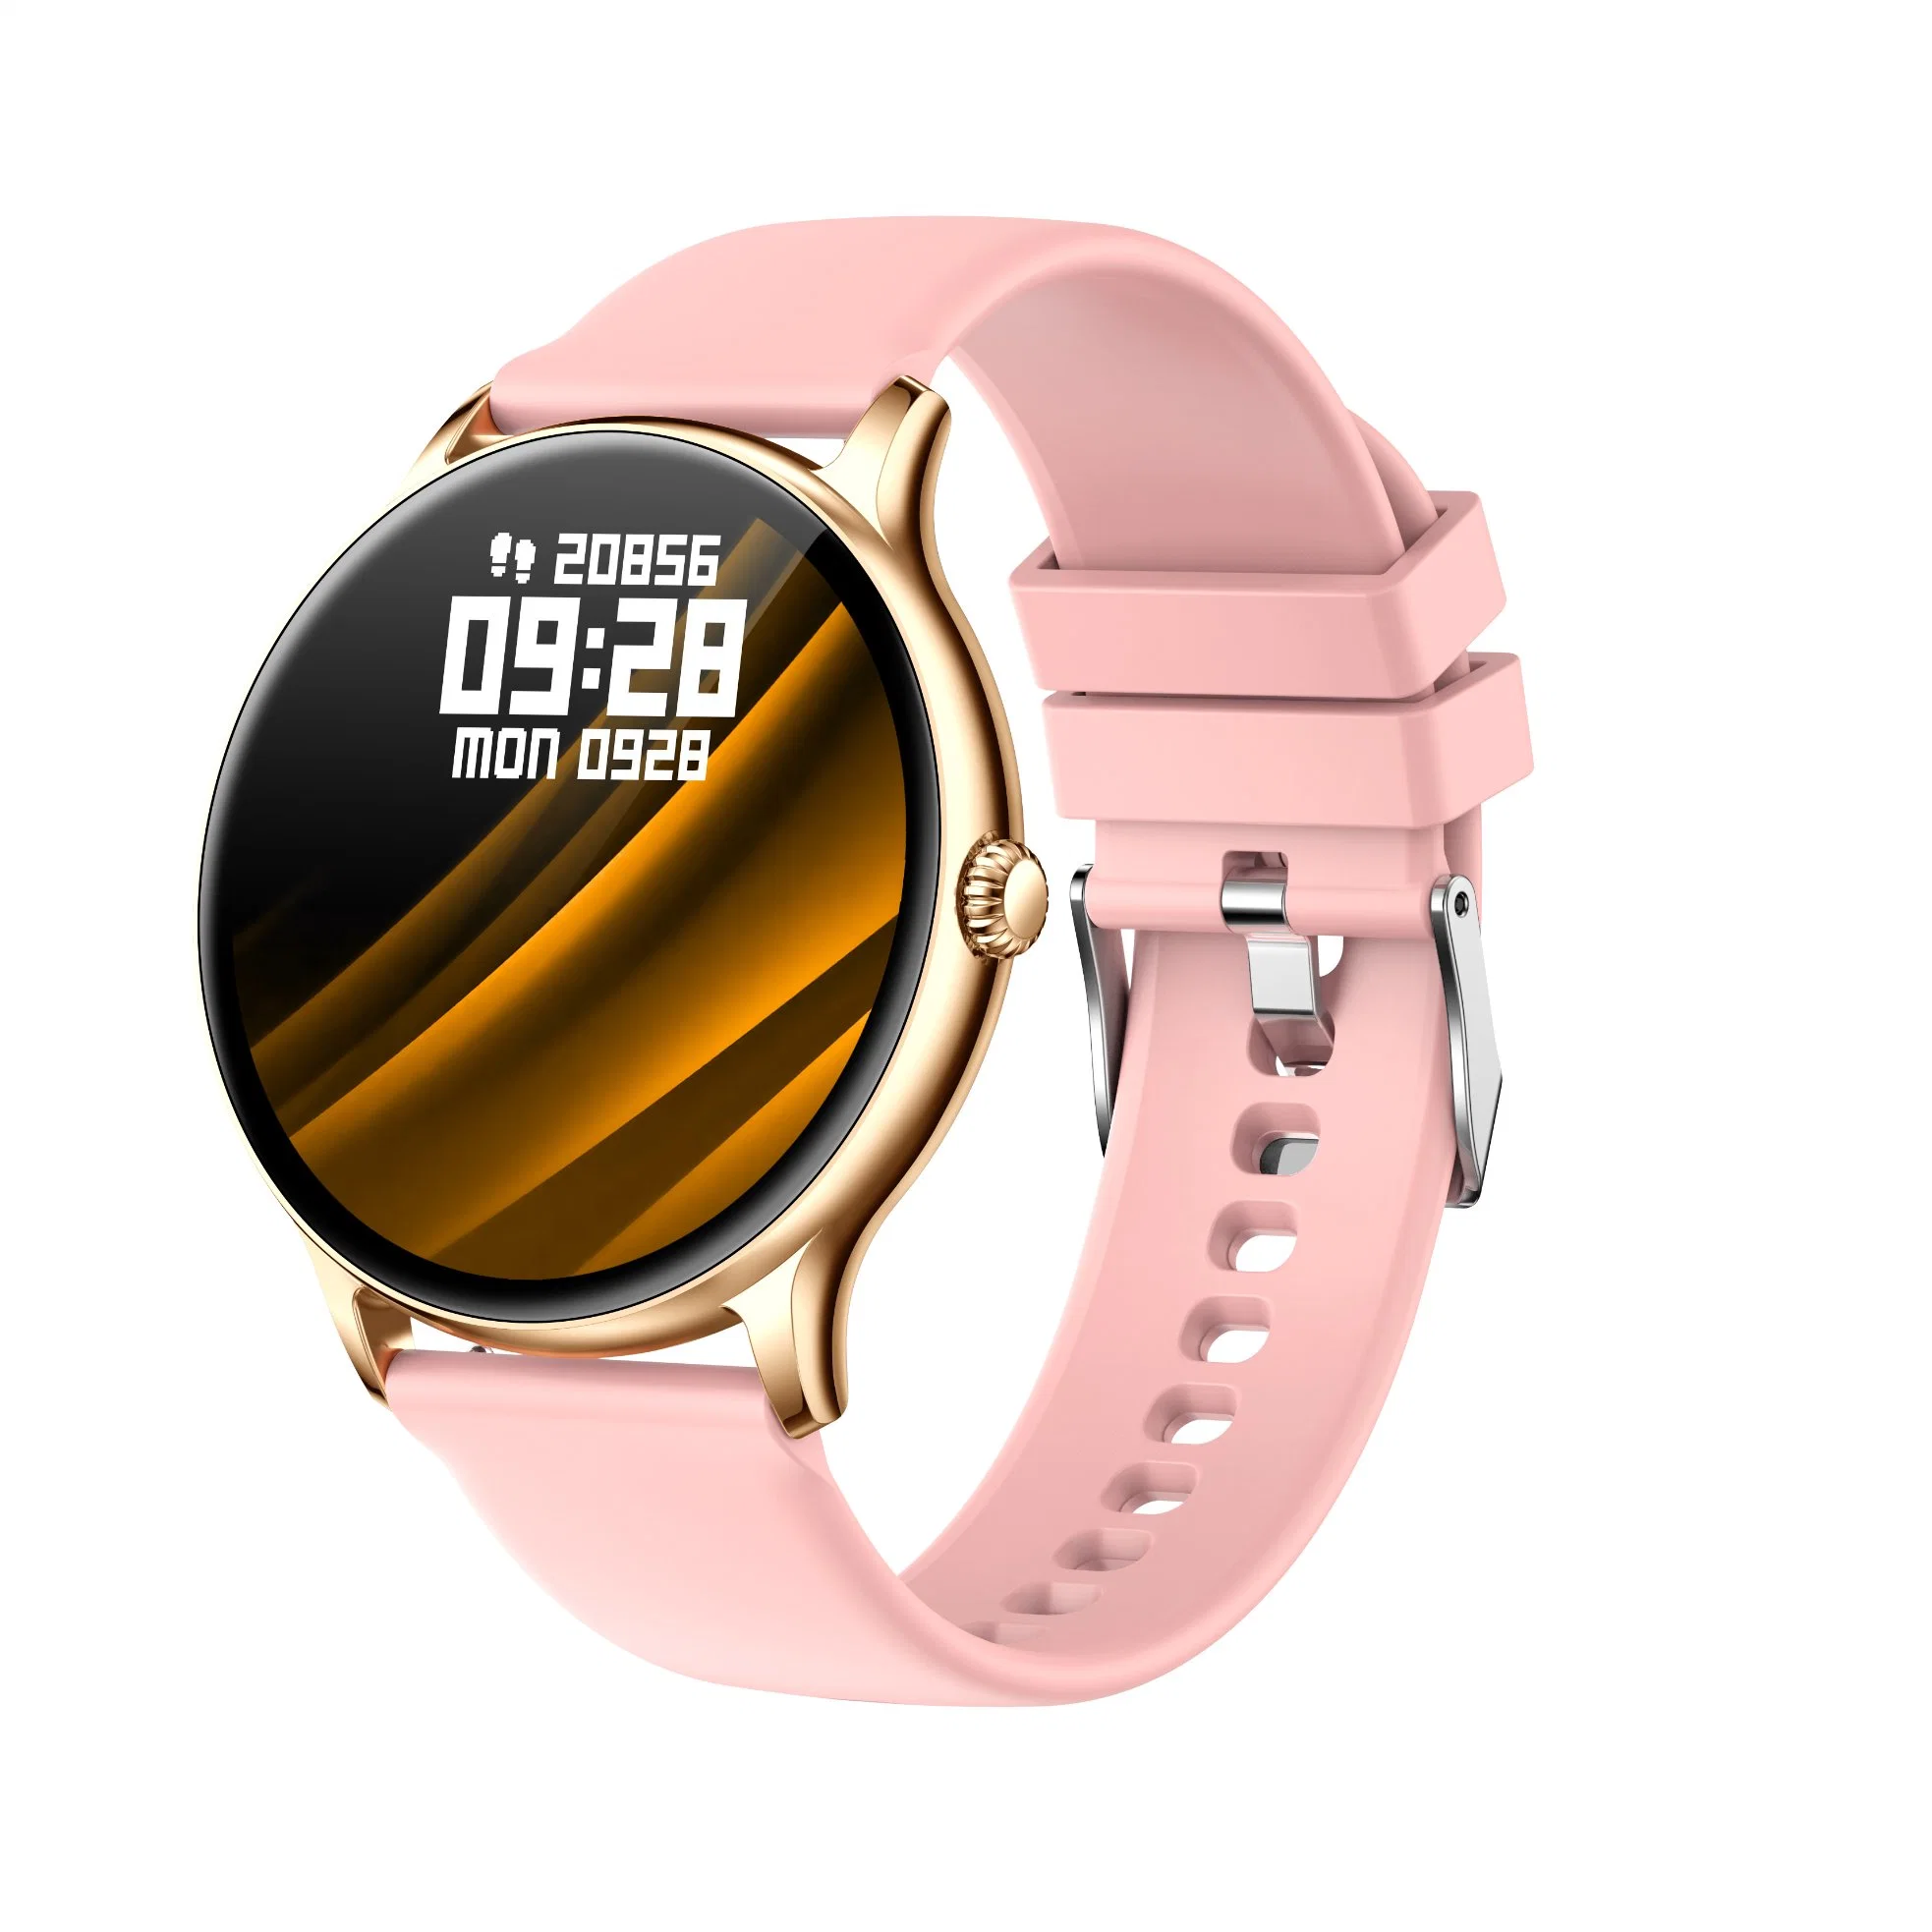 Neue Smart Watch Männer Full Touchscreen Sport Fitness Uhr IP67 Wasserdichte Bluetooth für Android iOS Smartwatch